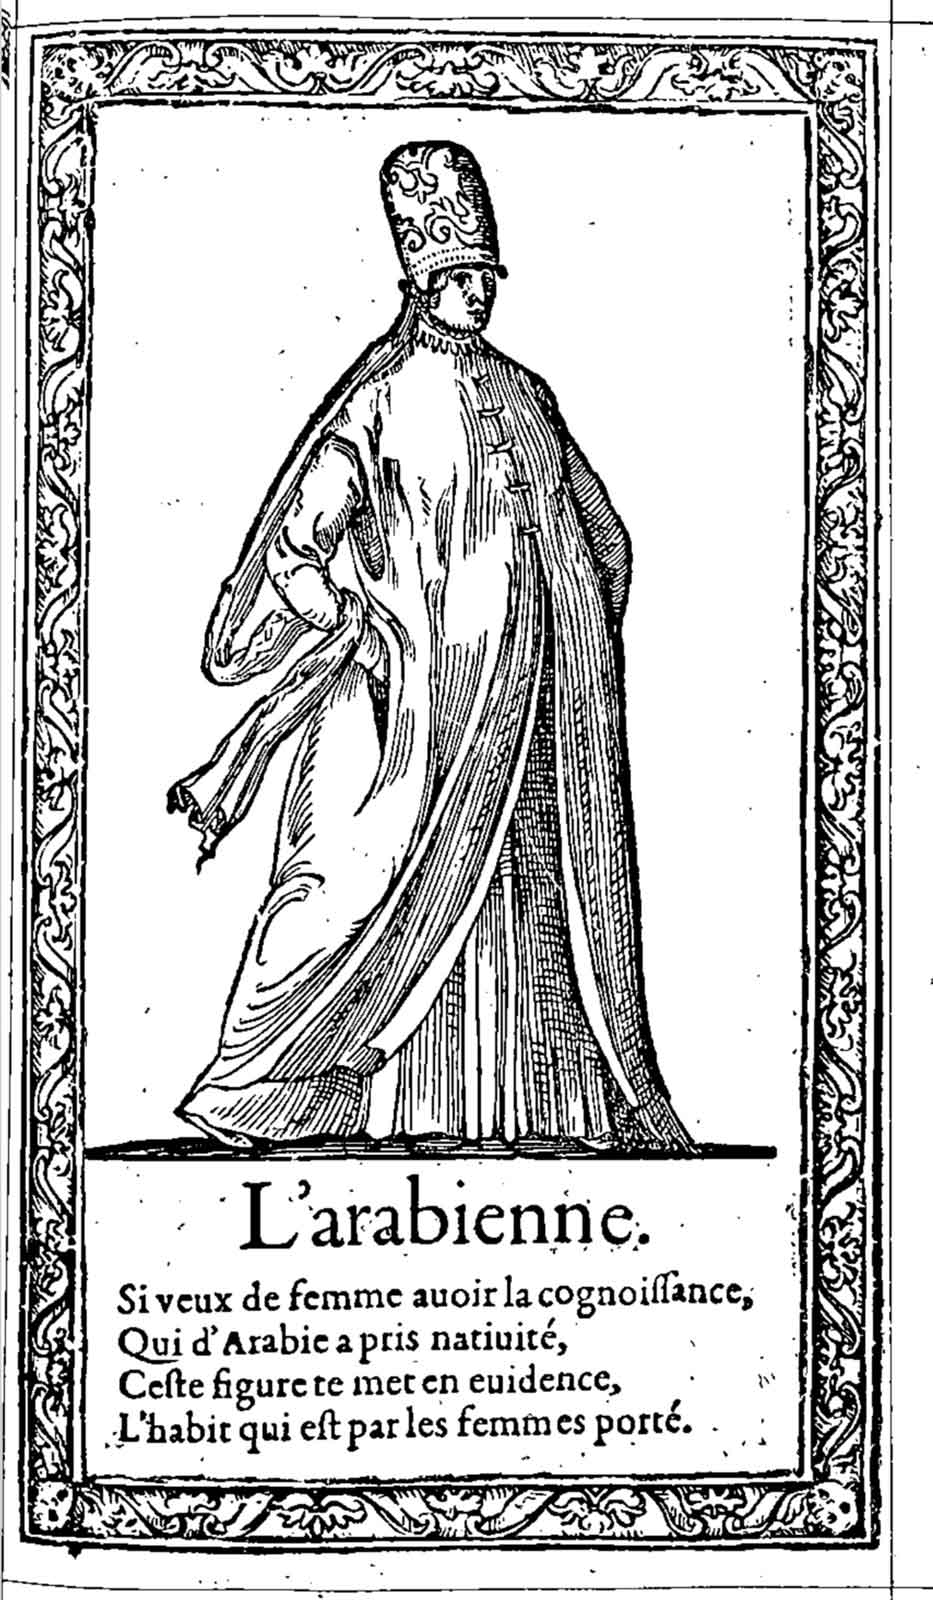 L’arabienne. Desprez, Recueil de la diversité des habits (1564)